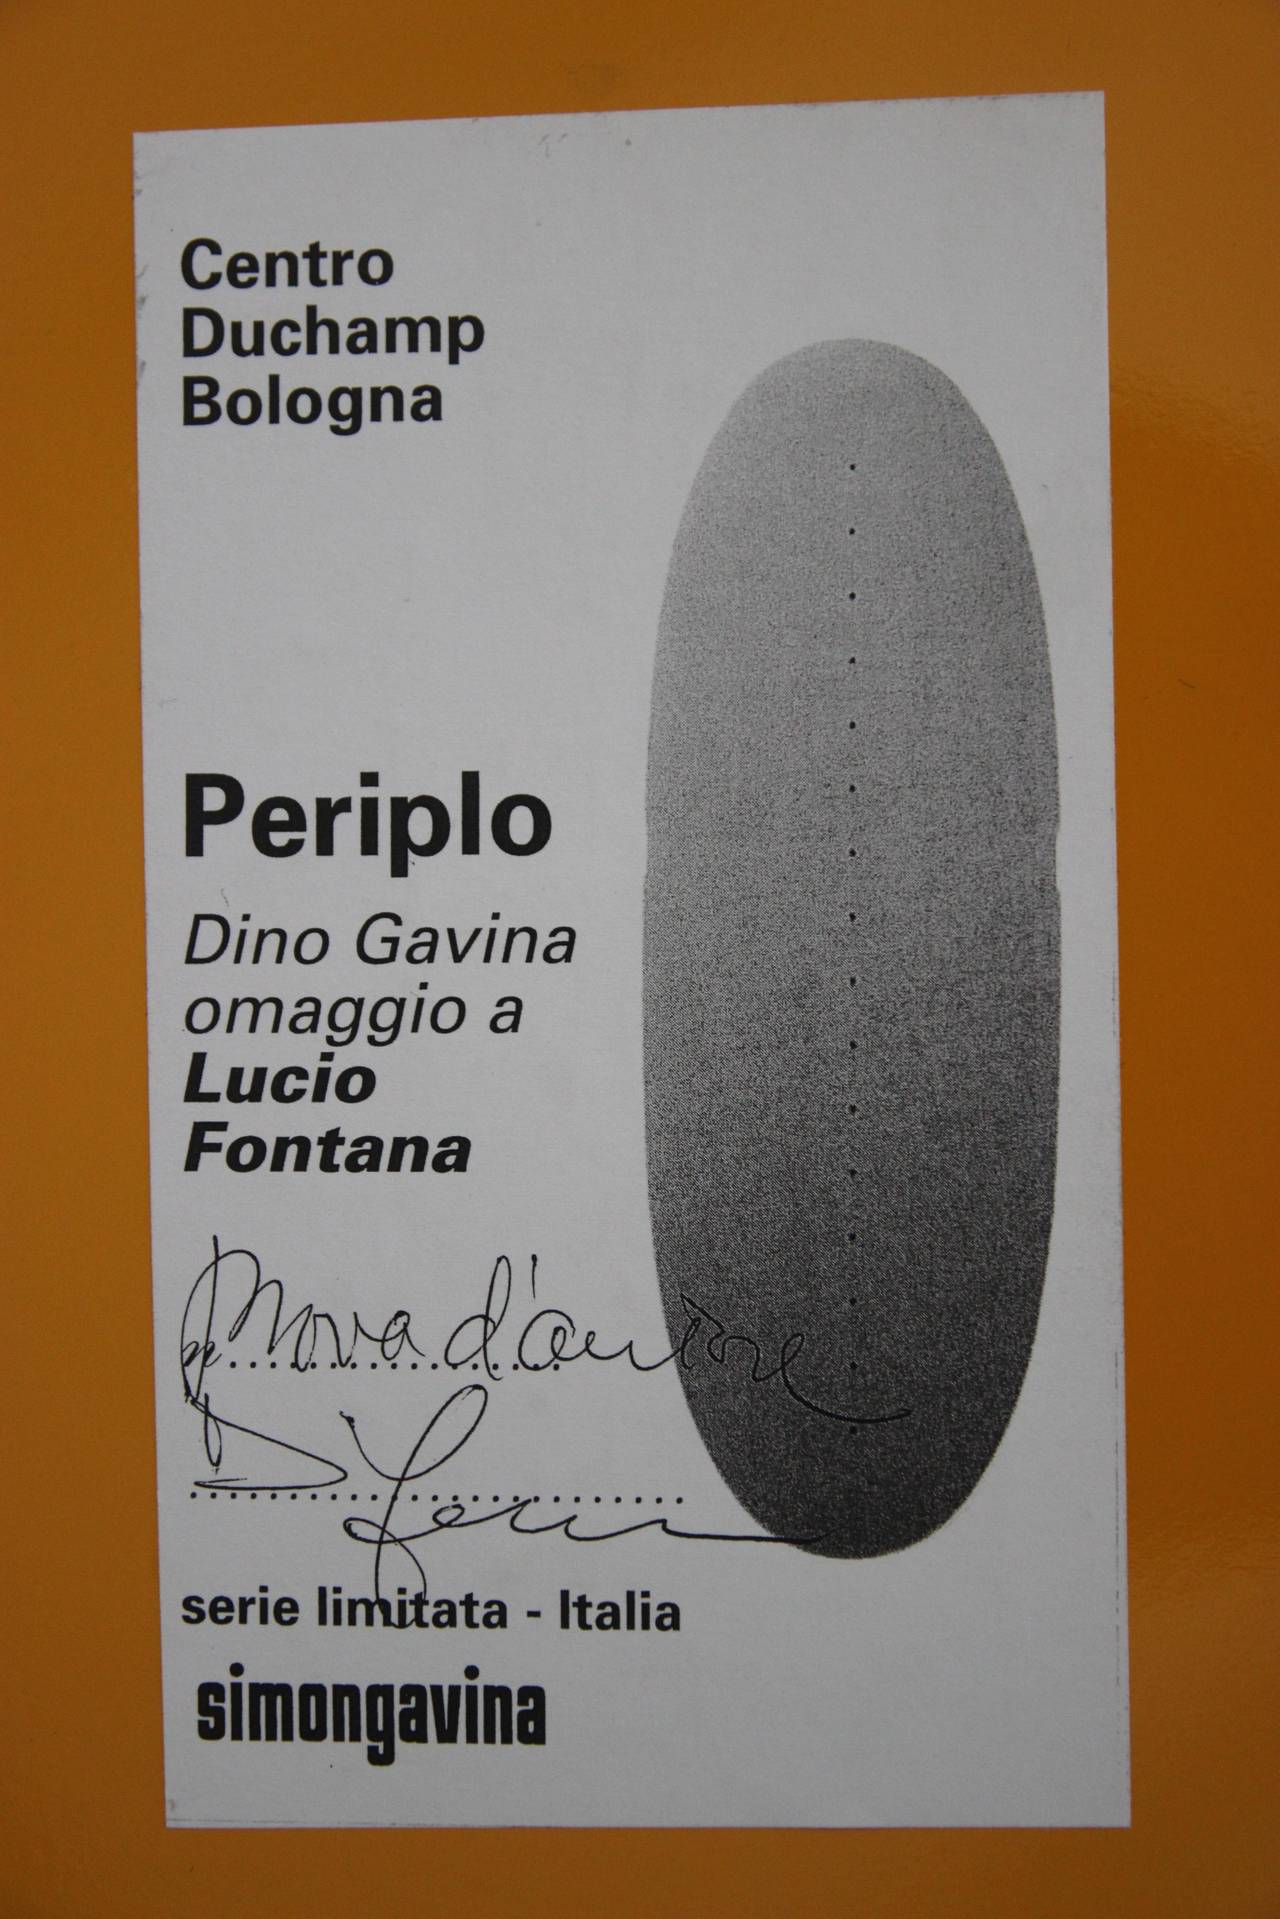 Lacquered Dino Gavina, 